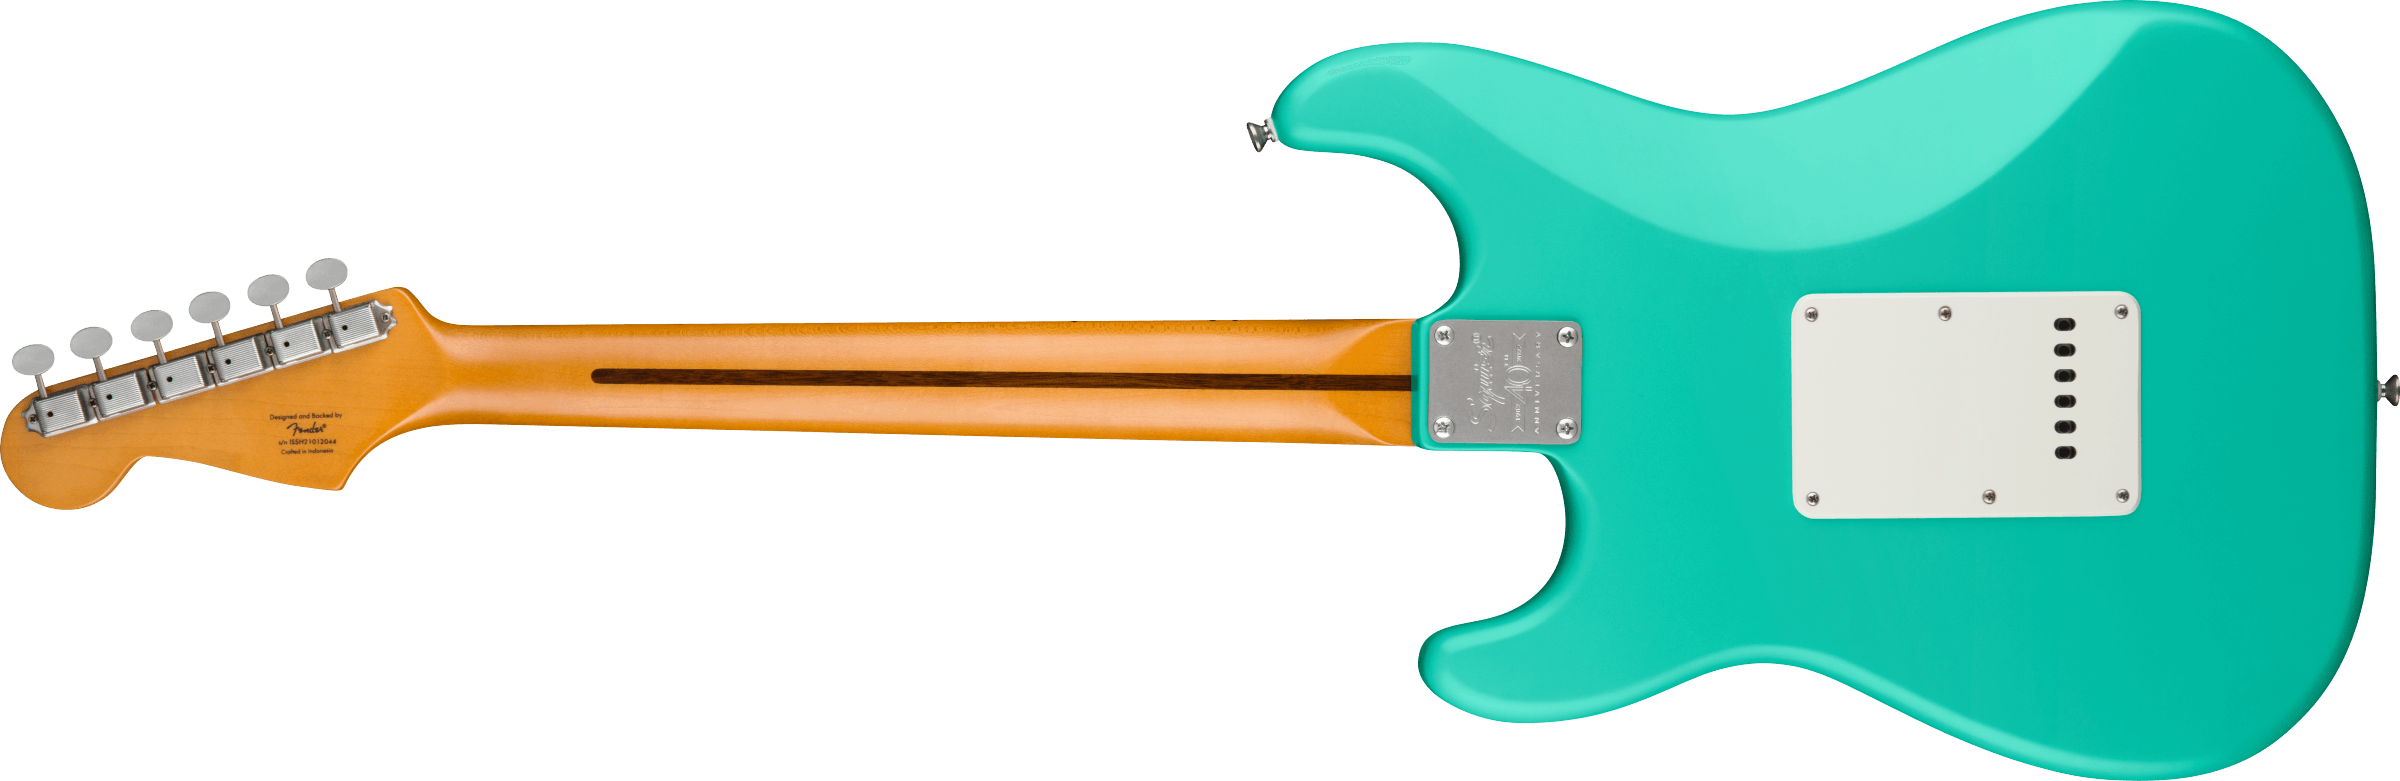 Squier Strat 40th Anniversary Vintage Edition Mn - Satin Seafoam Green - Elektrische gitaar in Str-vorm - Variation 1